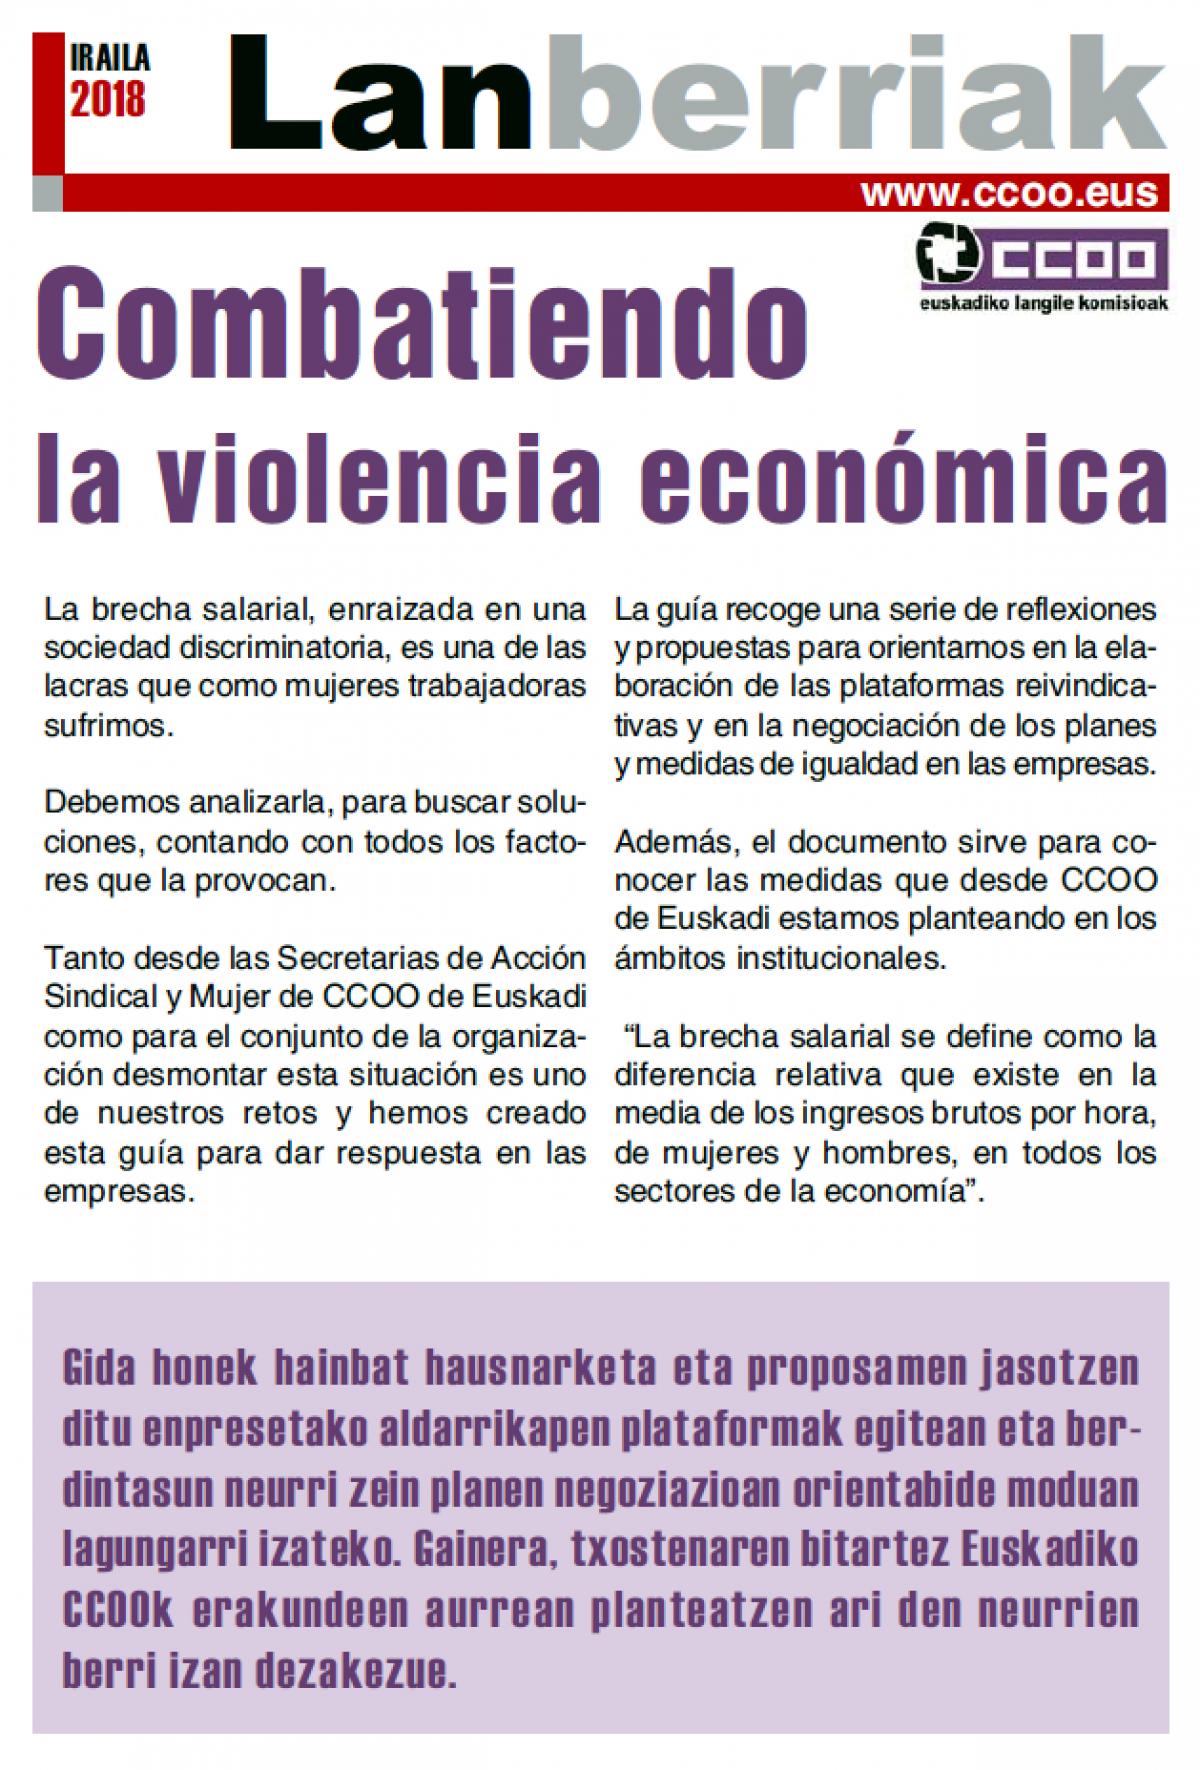 Lanberriak "Combatiendo la violencia económica"